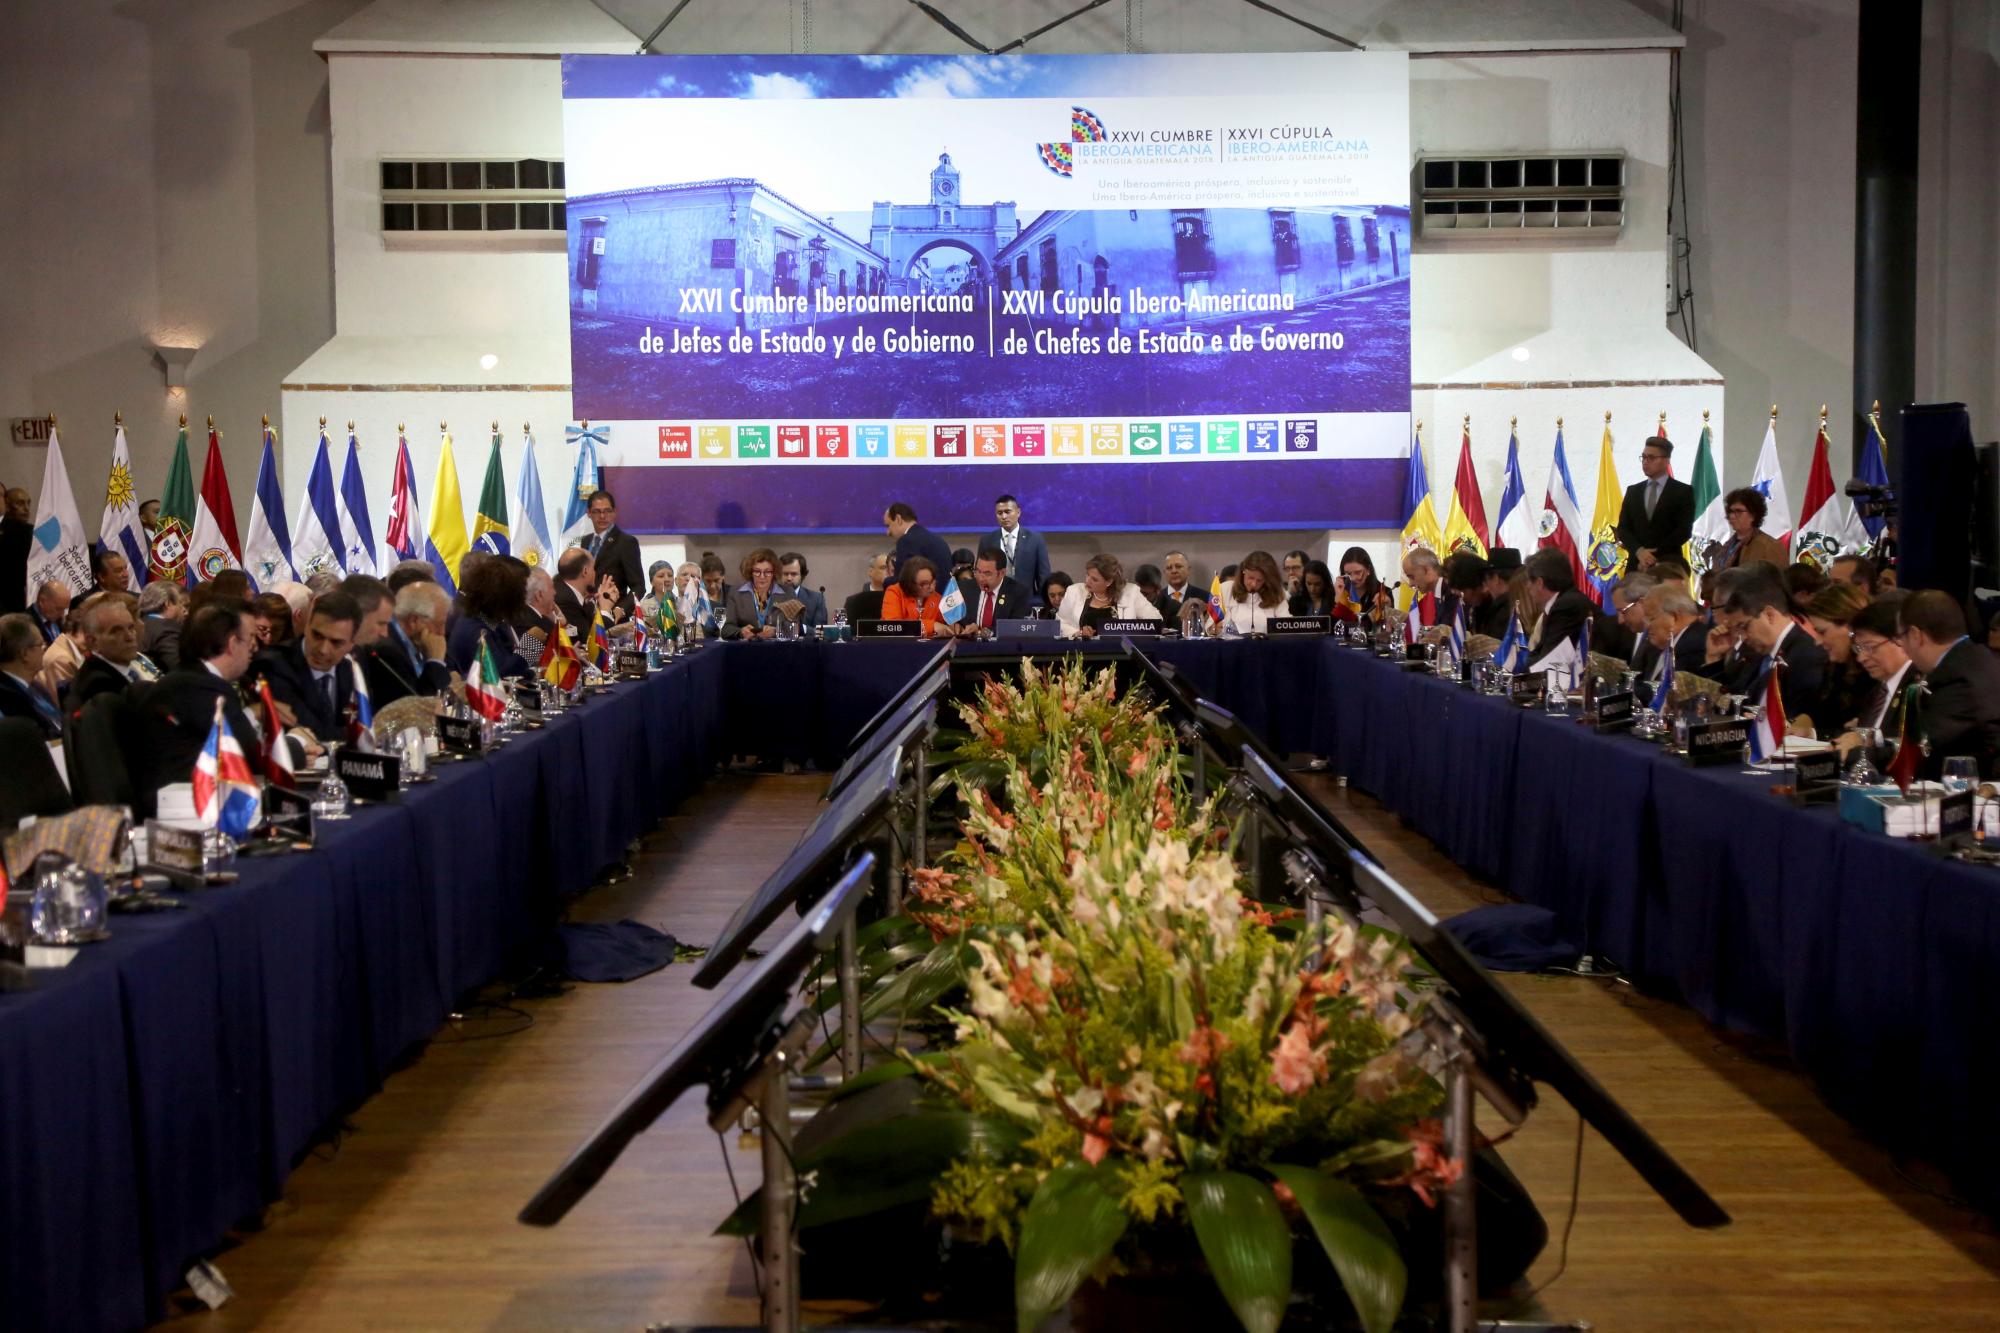 Presidentes y jefes de delegaciones asisten a la primera sesión durante la XXVI Cumbre Iberoamericana en Antigua, Guatemala, viernes 16 de noviembre de 2018.